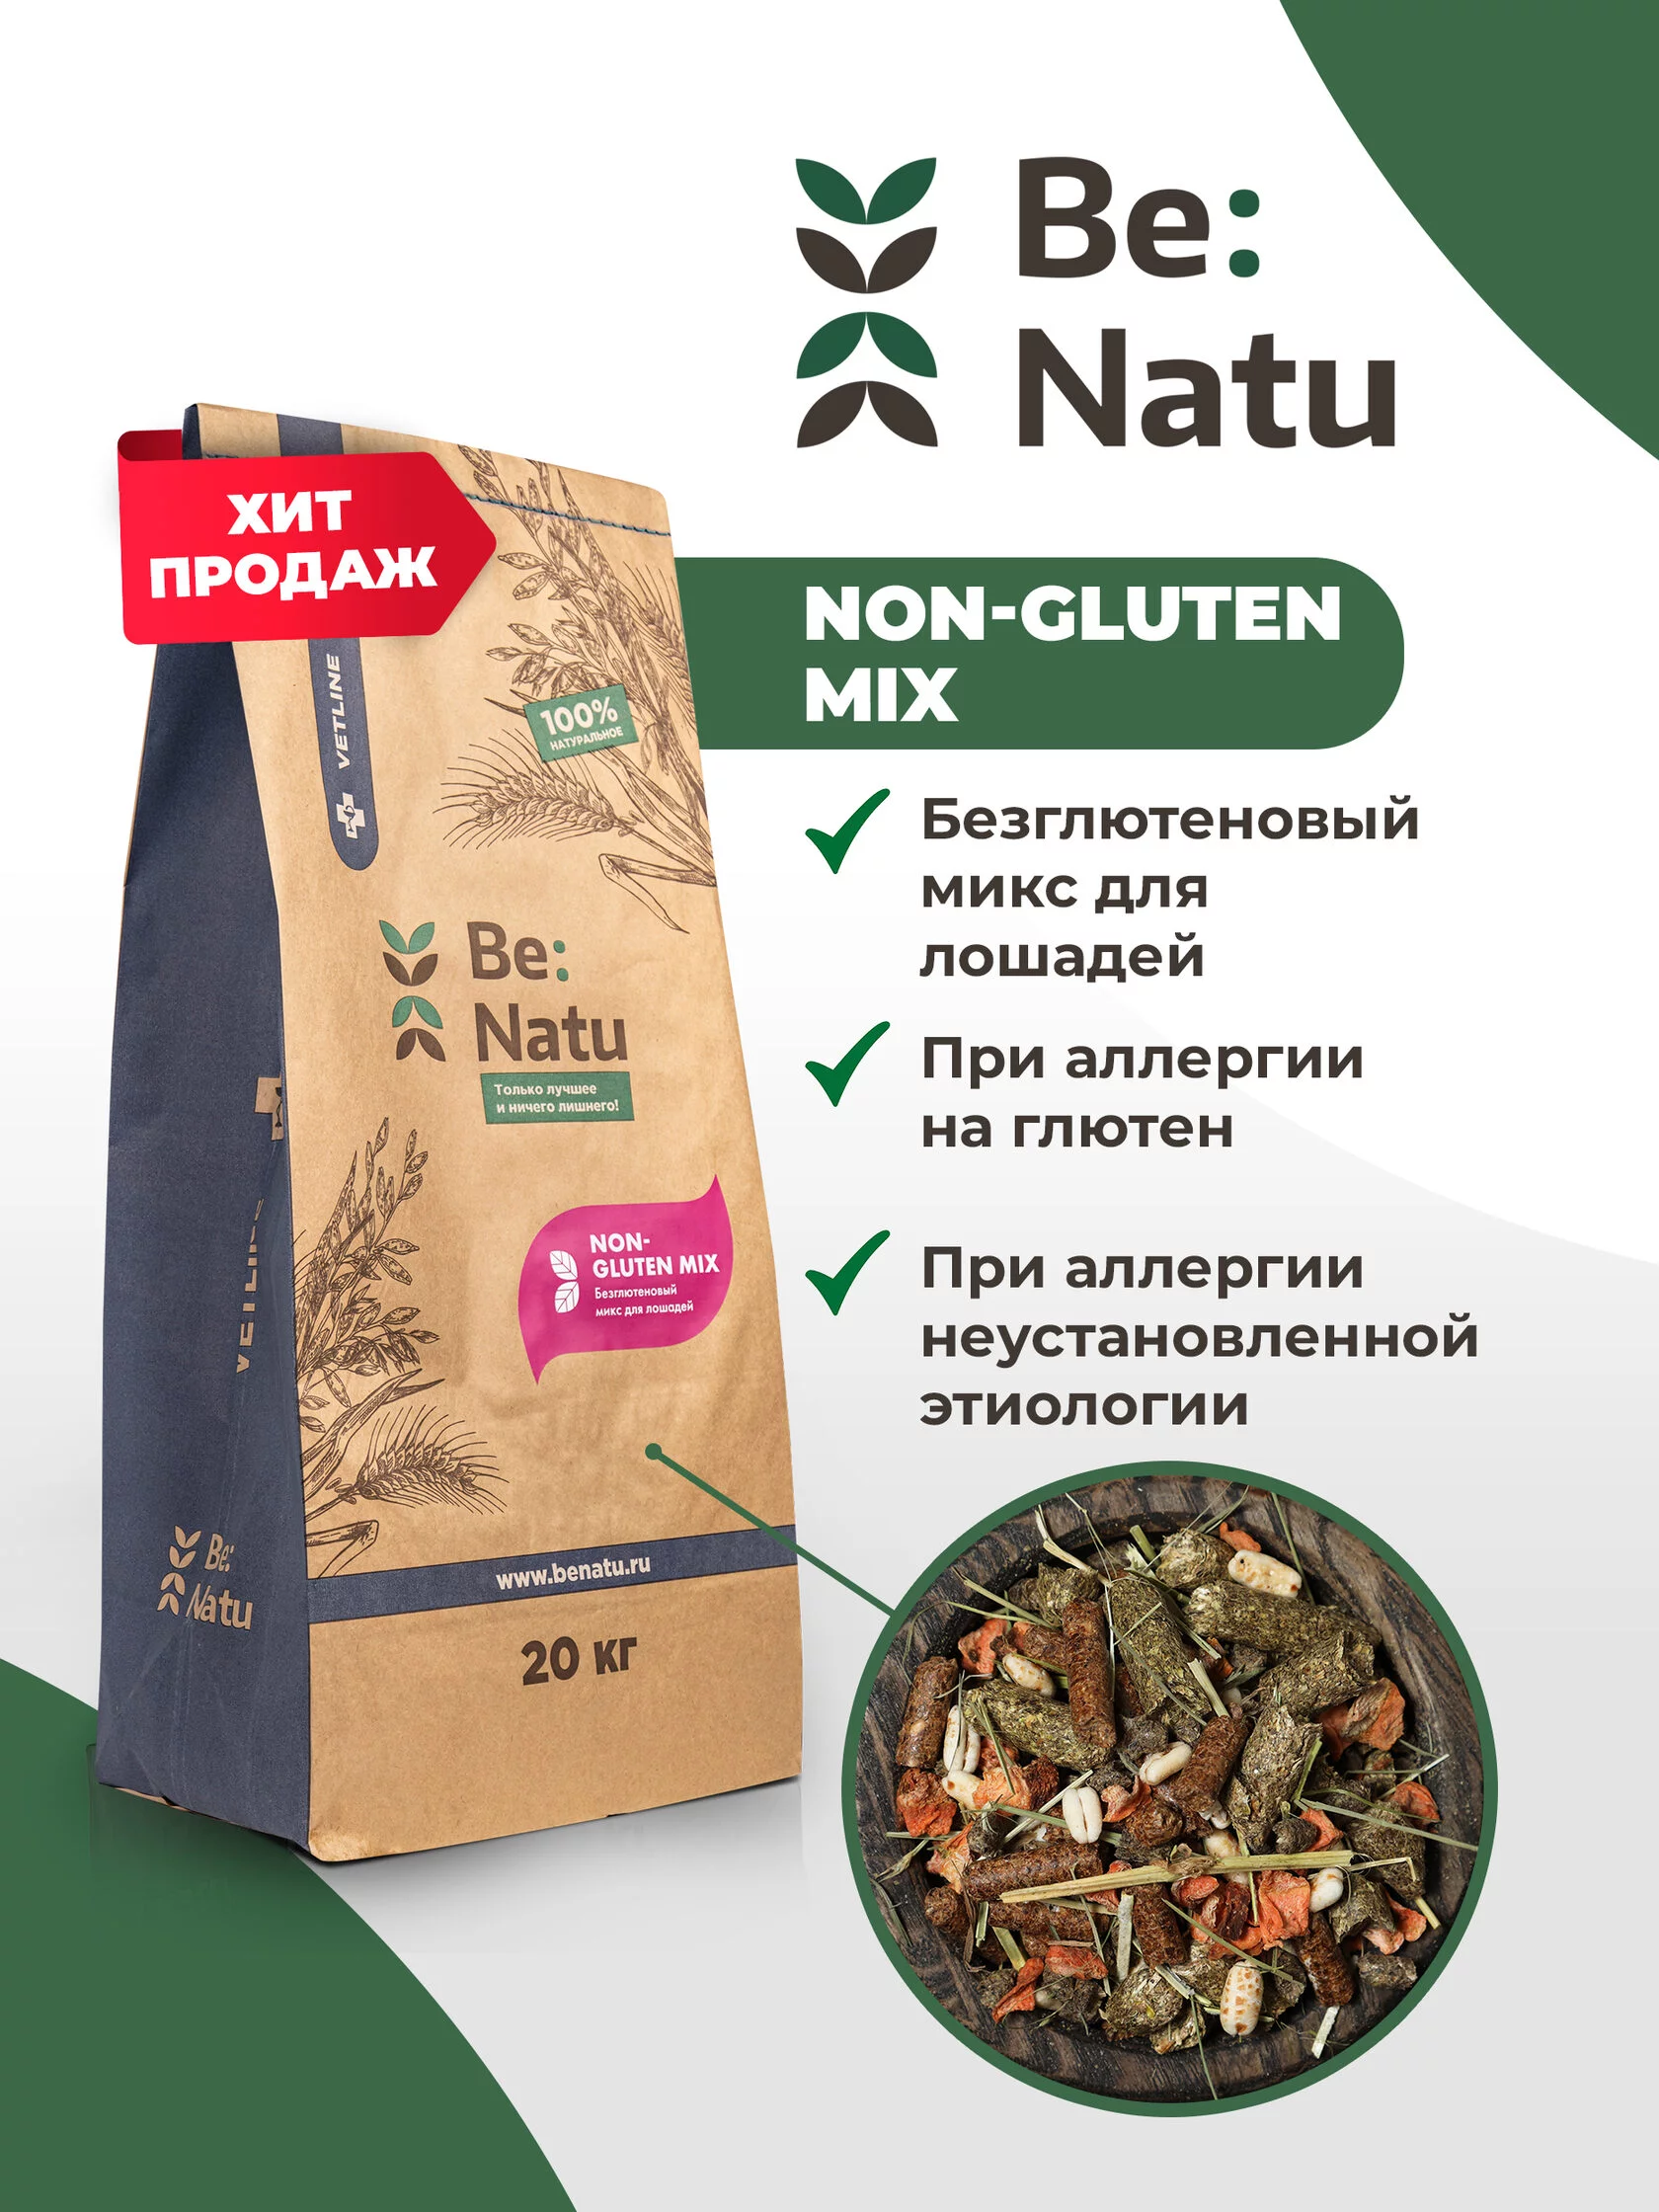  Be:Natu Non-gluten mix 20 